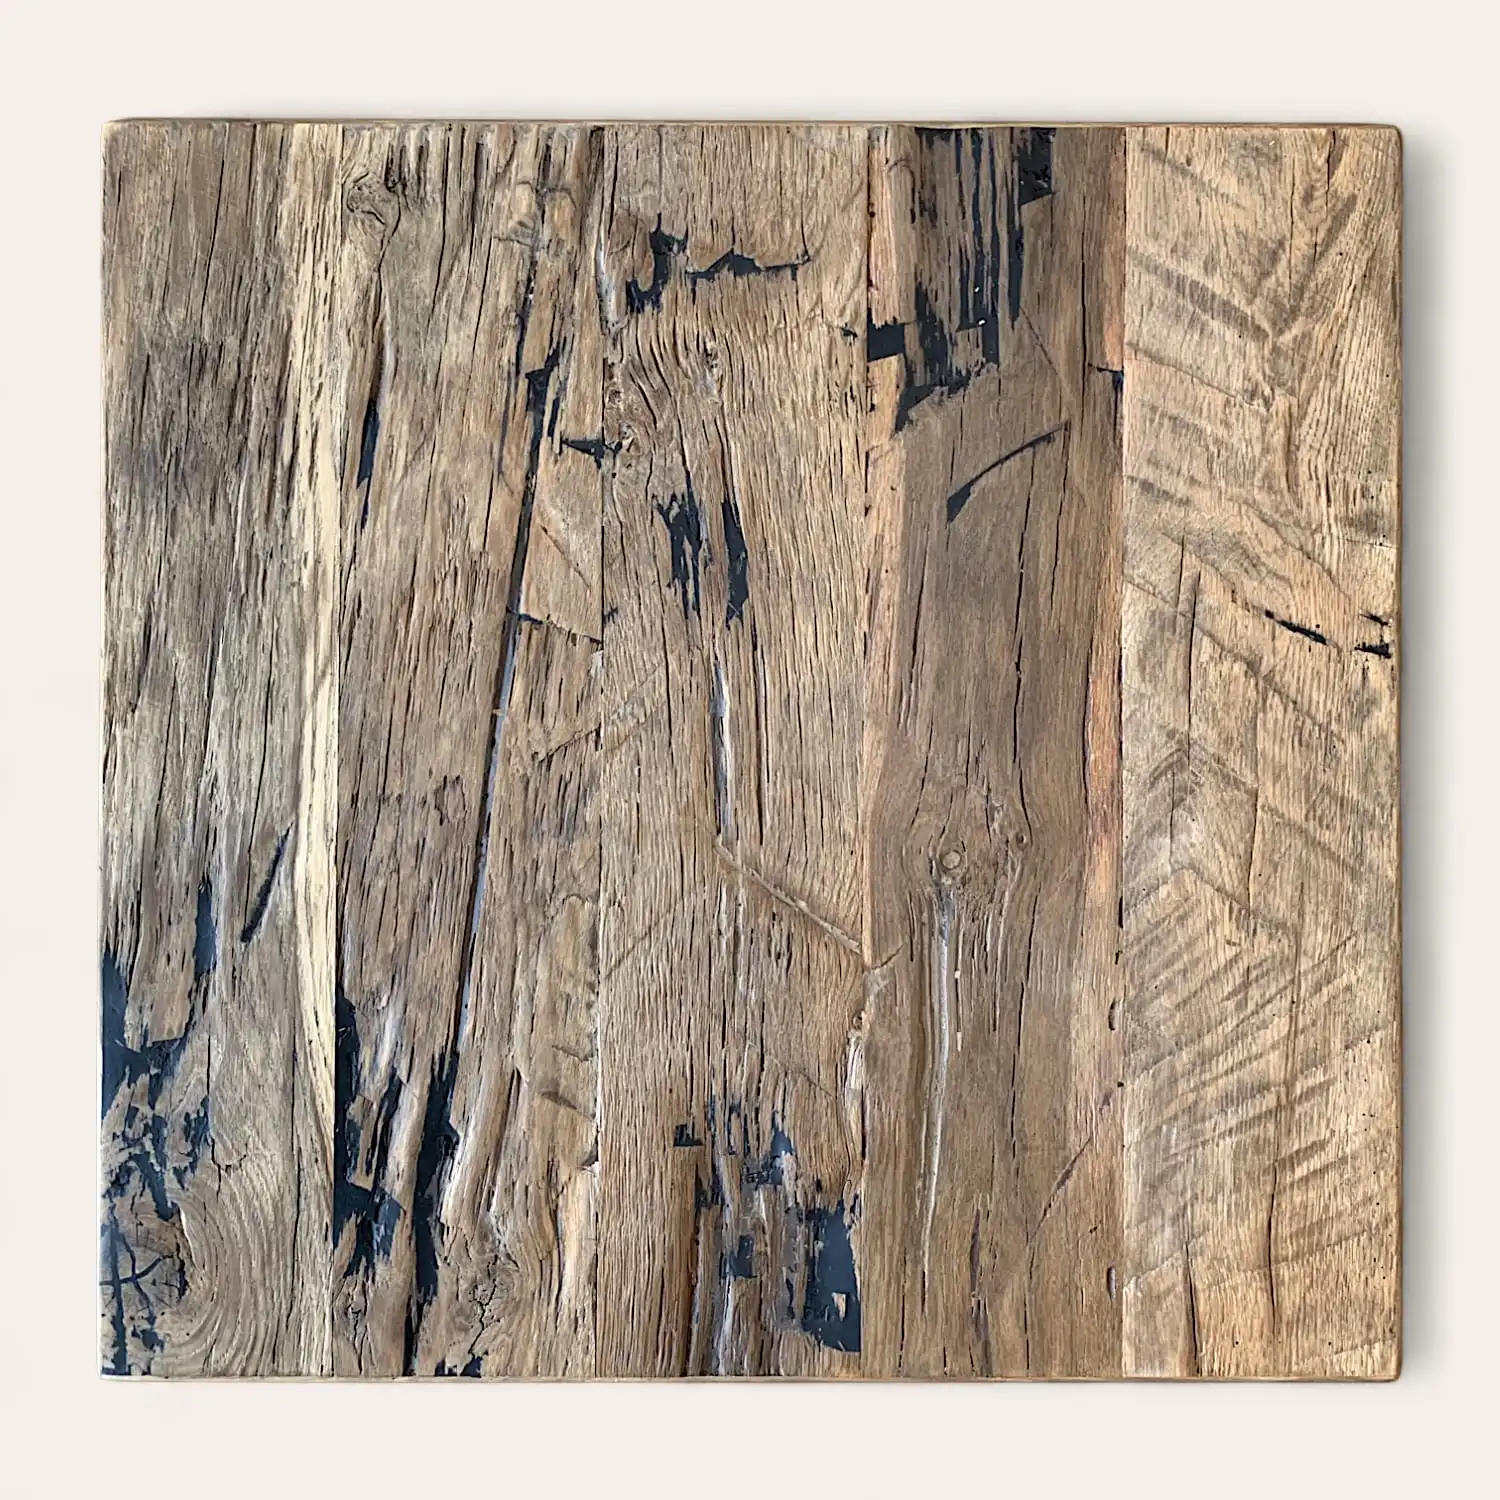  Gros plan d'une planche de bois texturée avec des détails de surface ébréchés et patinés, montrant les motifs naturels du grain du bois des panneaux vieux bois. 